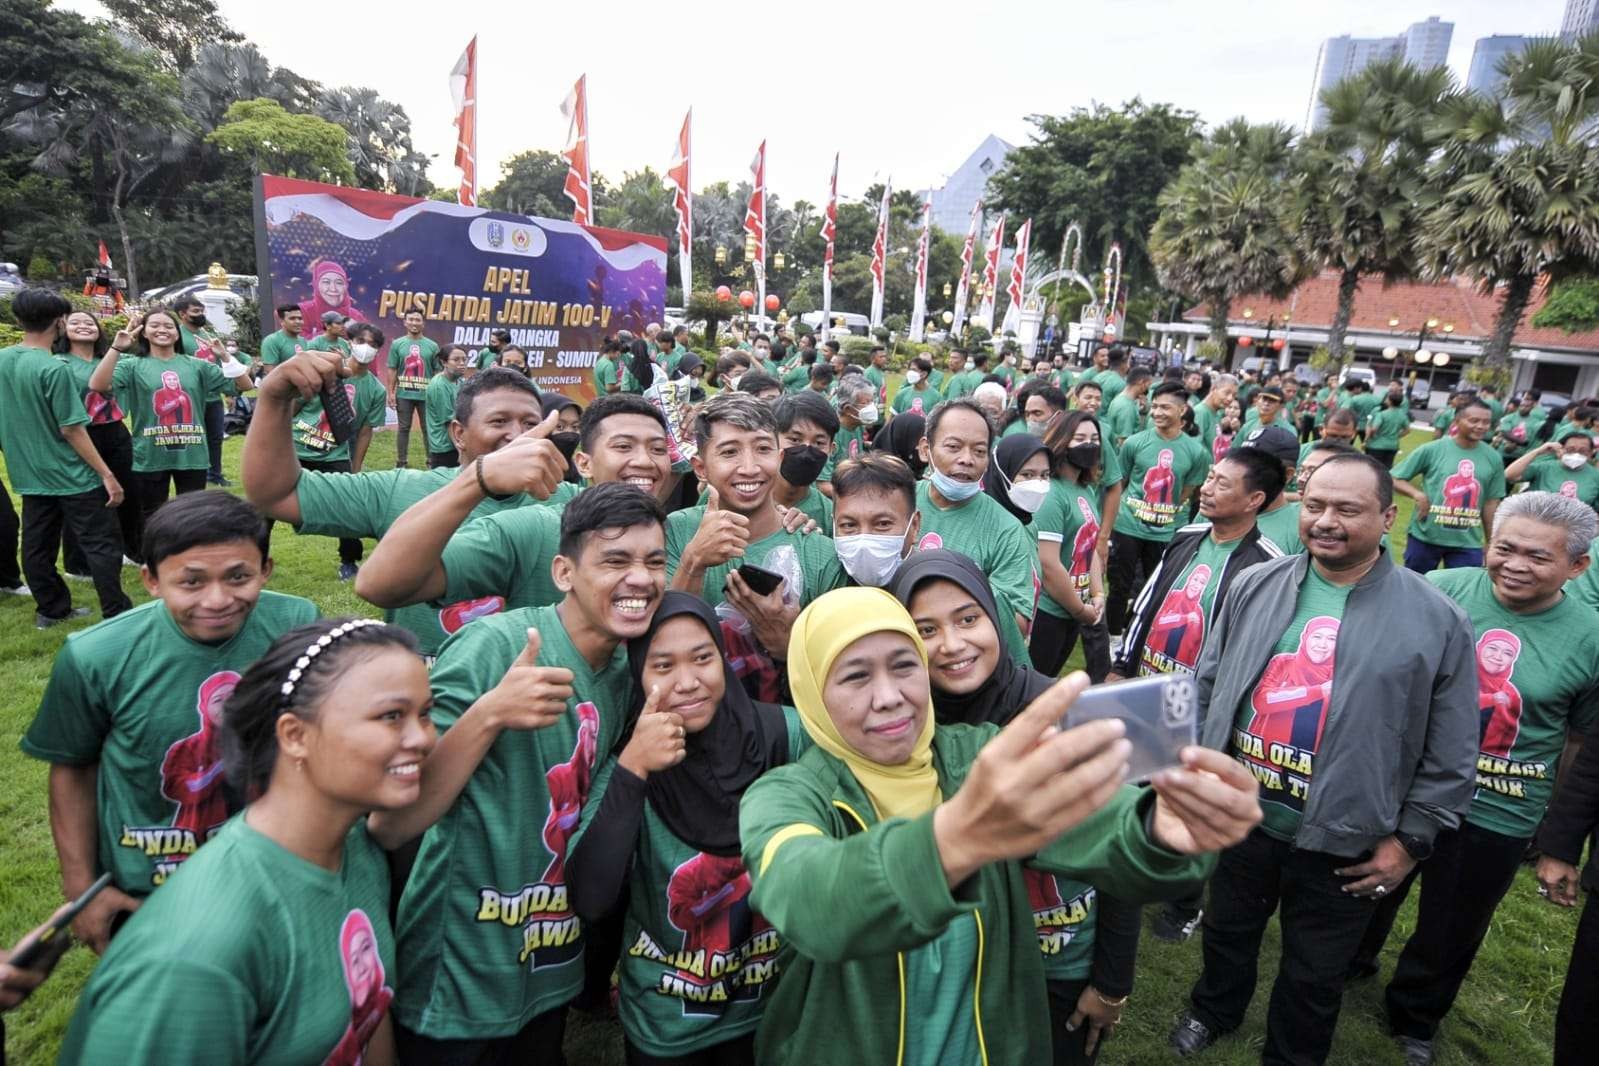 Gubernur Jatim, Khofifah Indar Parawansa berfoto bersa para atlet Puslatda Jatim di Gedung Negara Grahadi, Surabaya, Jumat 6 Januari 2022. (Foto: KONI Jatim)